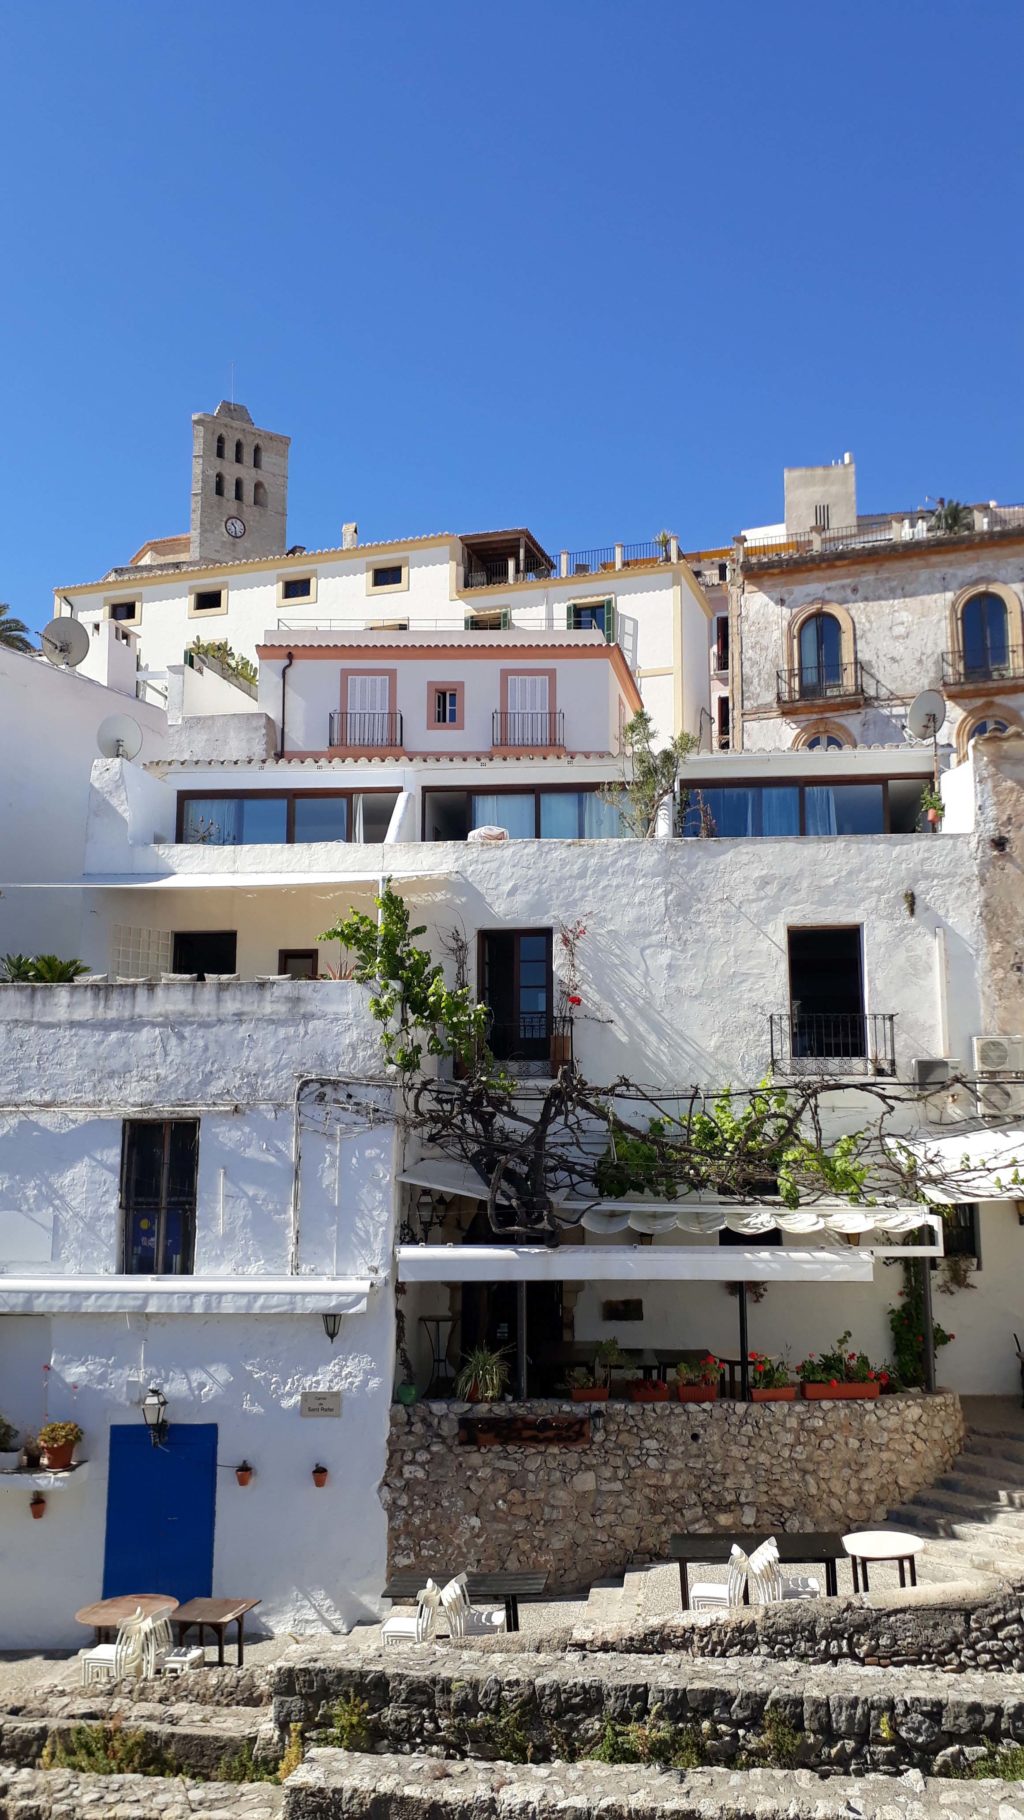 Altstadtviertel Dalt Vila mit Castell d'Eivissa, Portal de ses Taules, Sa Capelleta (Capella de Sant Ciriac), Catedral Santa Maria de les Neus und Zitadelle Eivissa